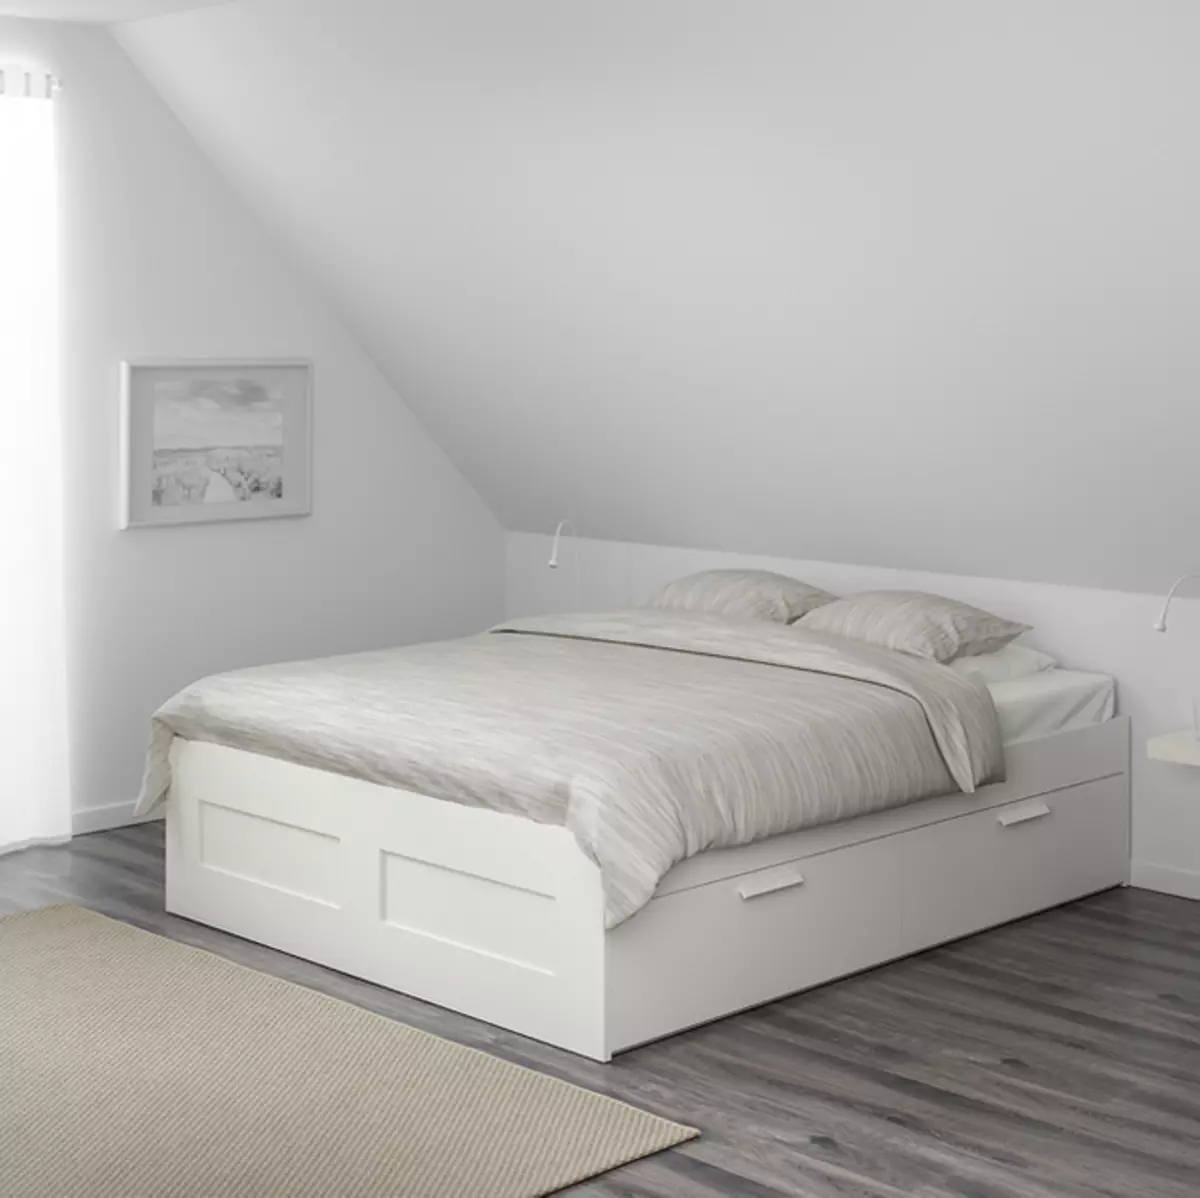 Ferramentando um lugar de dormir em melogabras: 9 melhores camas, sofás e sofás de Ikea 7288_19